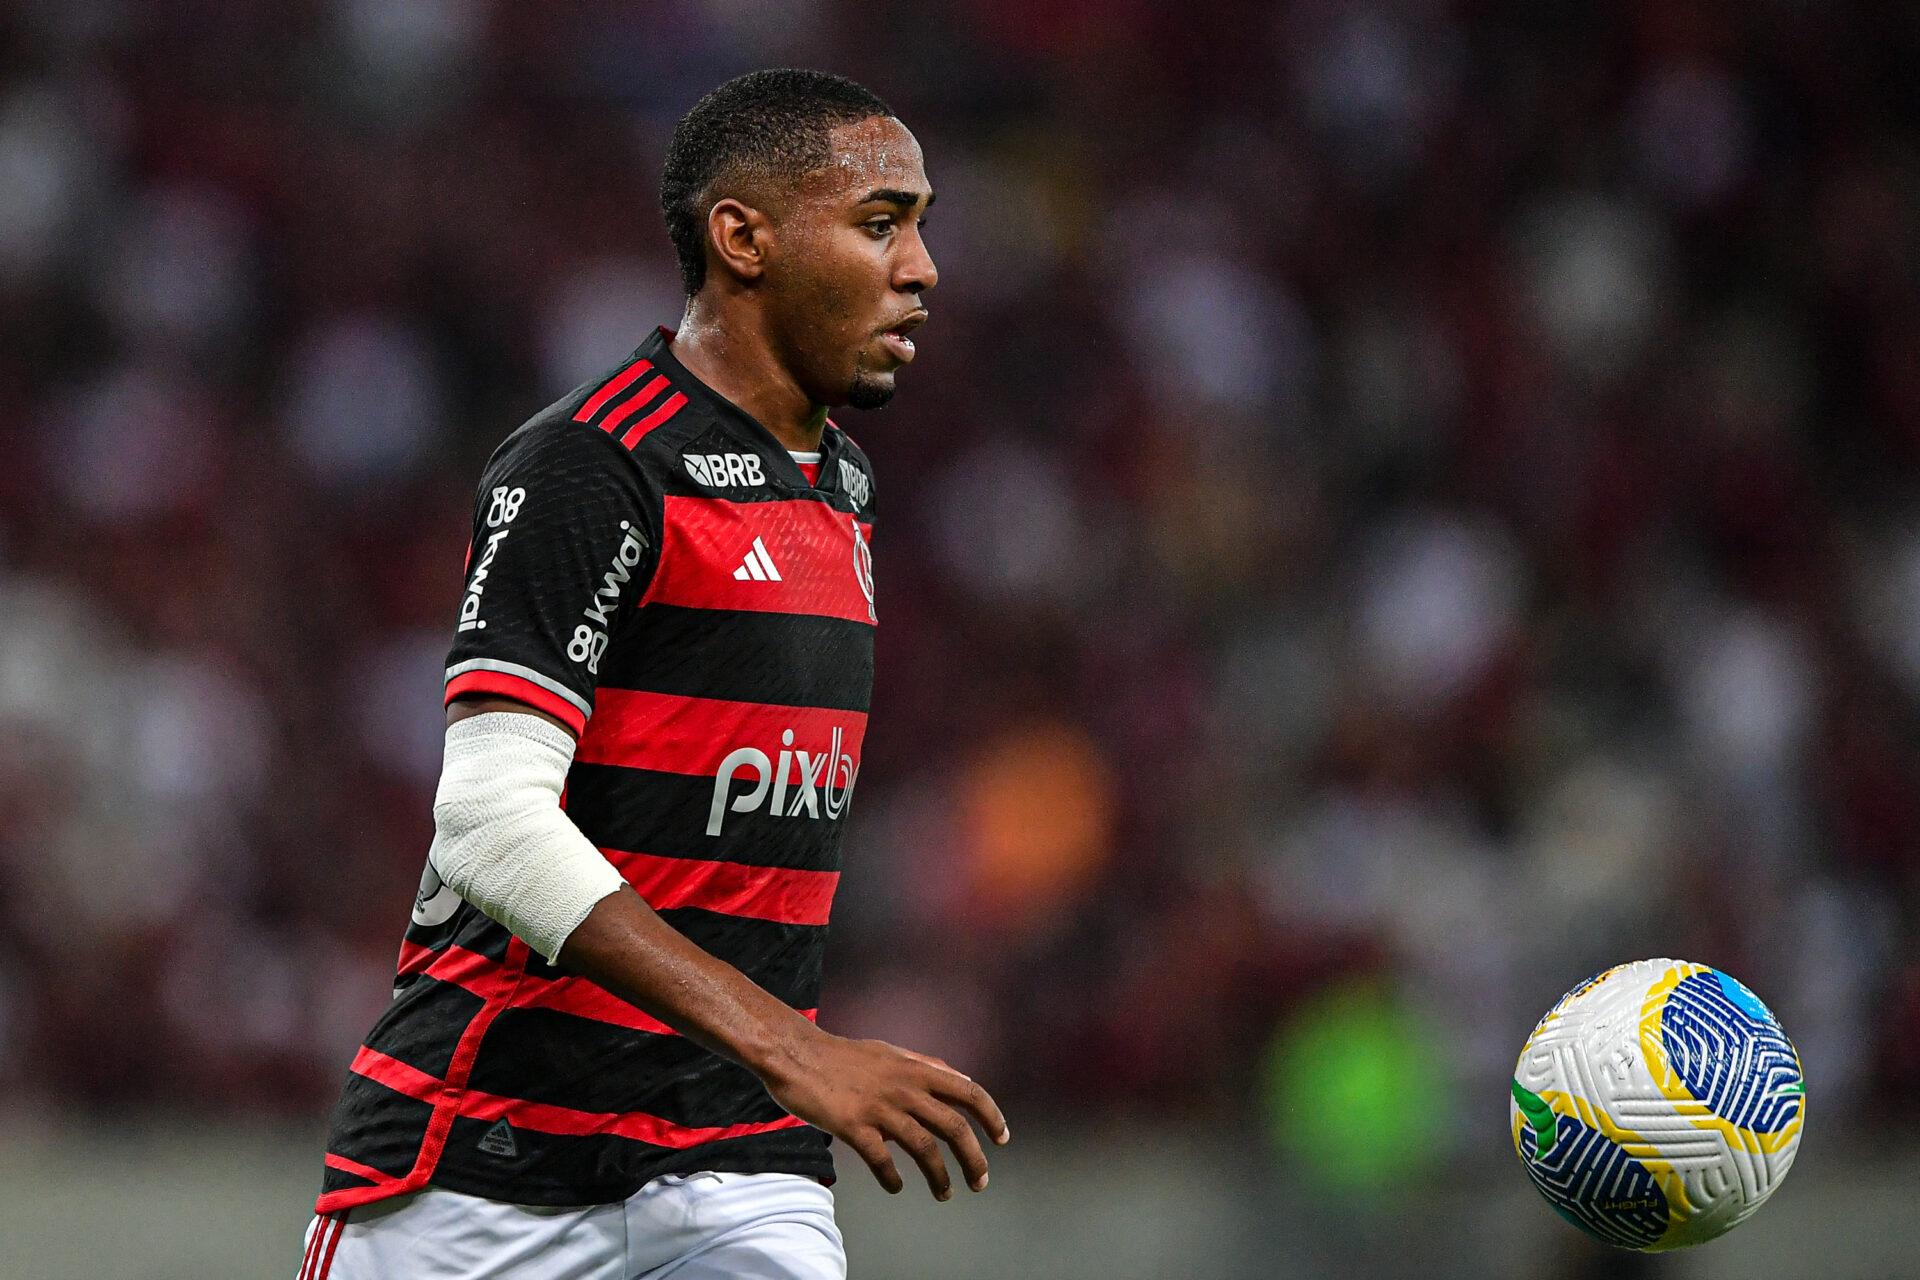 Lorran - Flamengo